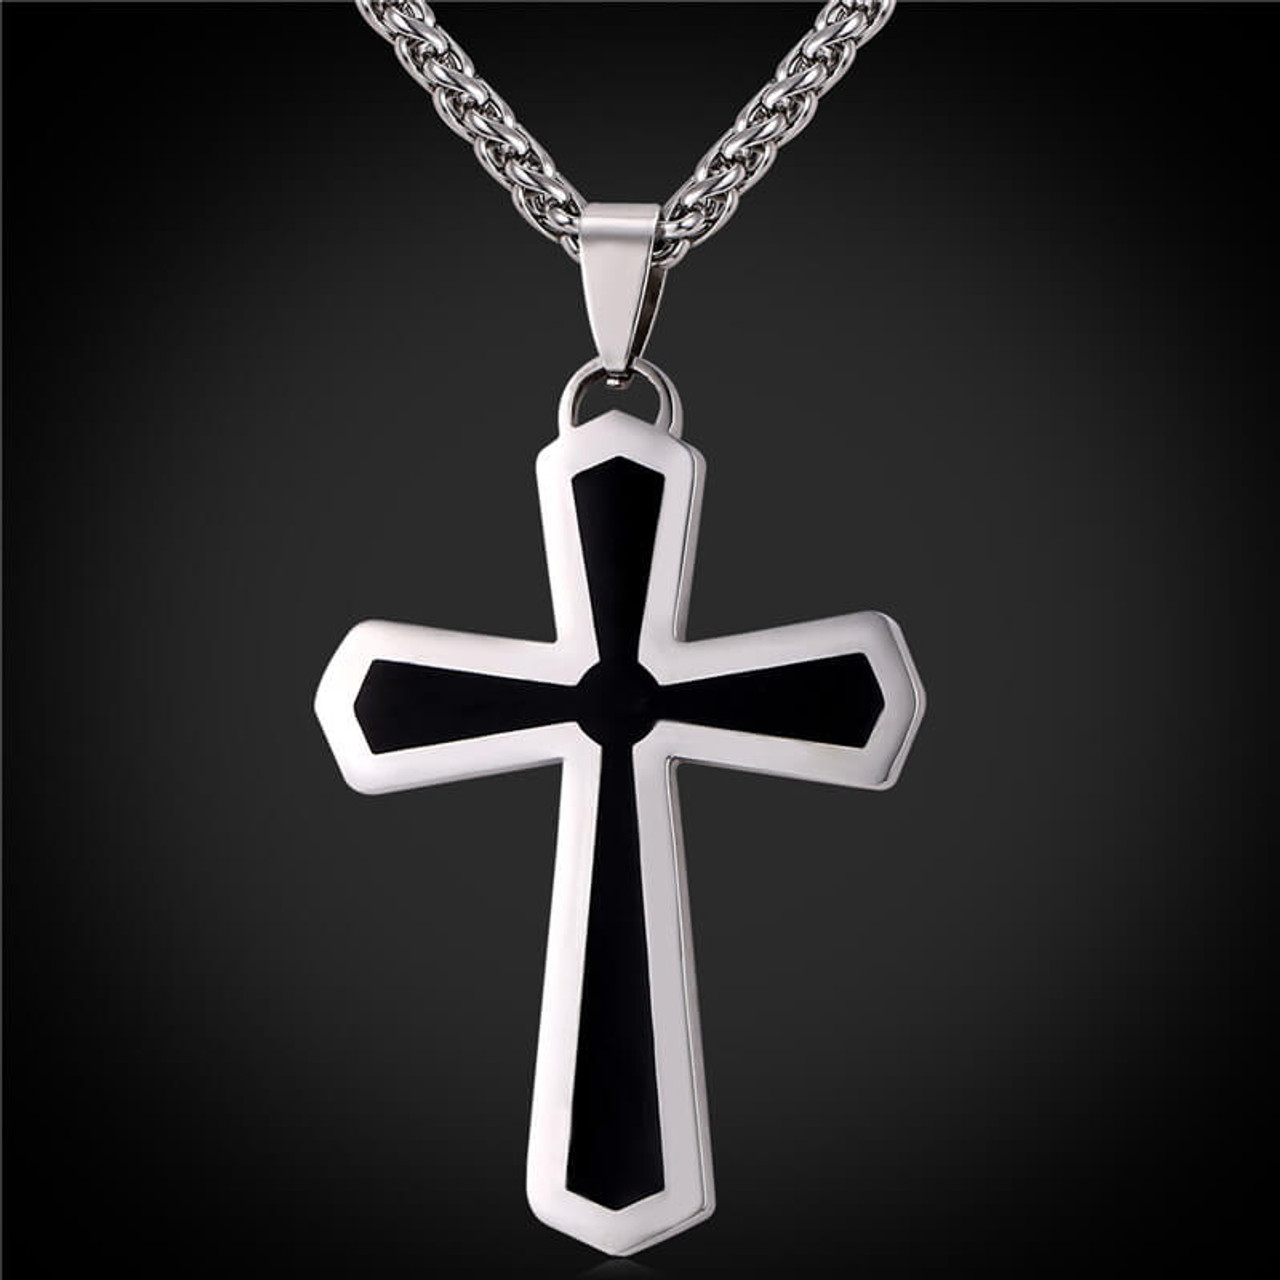 Men's Stainless Steel Cross Pendant - Best Accents Men's Stainless Steel Cross Necklaces